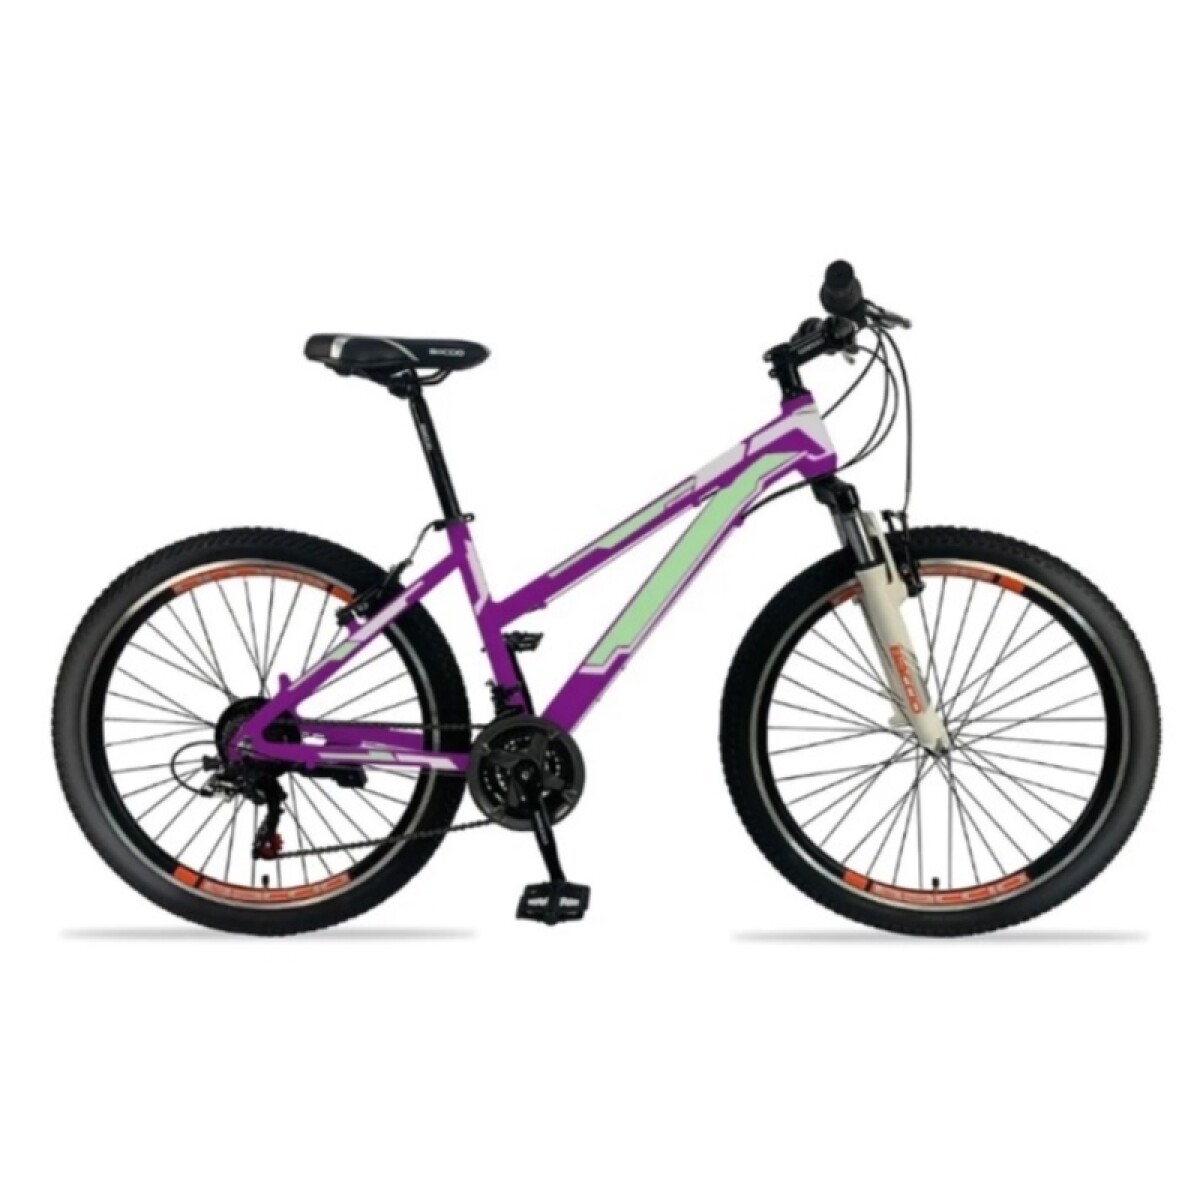 Bicicleta Baccio R.26 Dama Sunny Mtb Aluminio - Violeta 